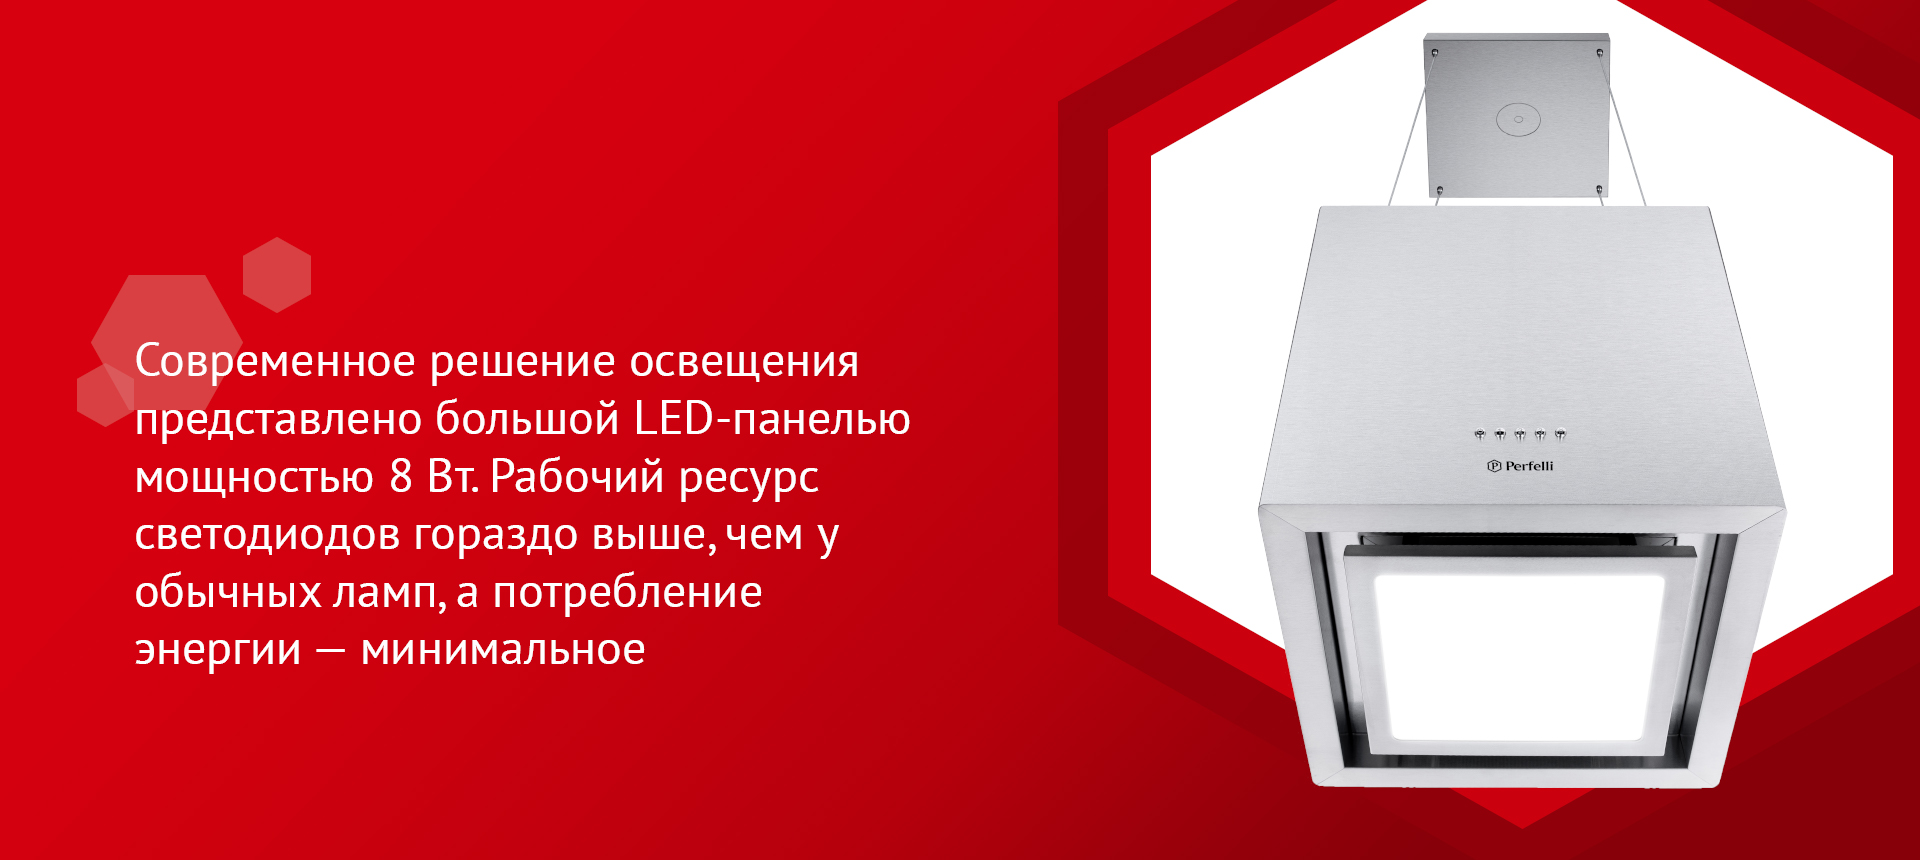 Современное решение освещения представлено большой LED-панелью мощностью 8 Вт. Рабочий ресурс светодиодов гораздо выше, чем у обычных ламп, а потребление энергии – минимальное